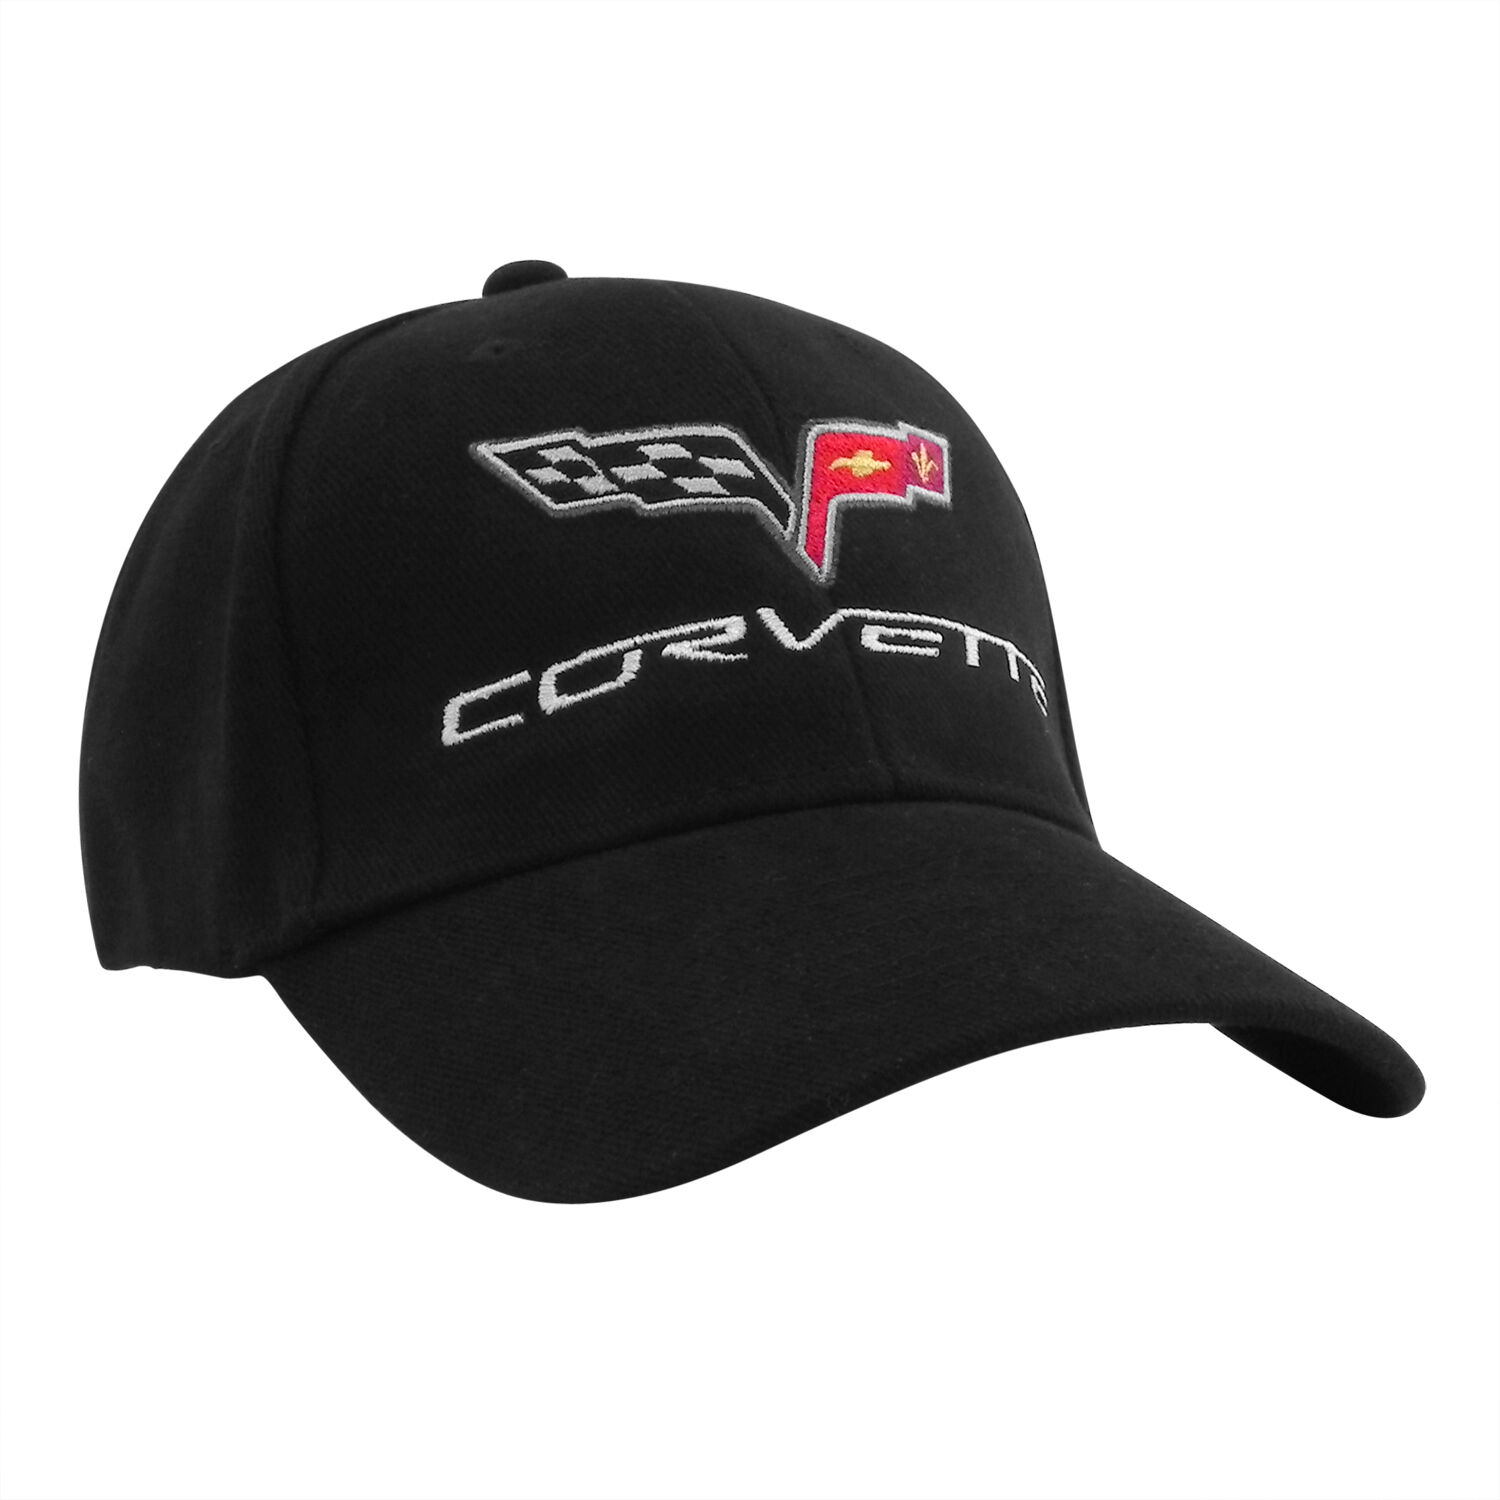 Chevrolet Corvette C6 Black Baseball Hat Baseball Cap